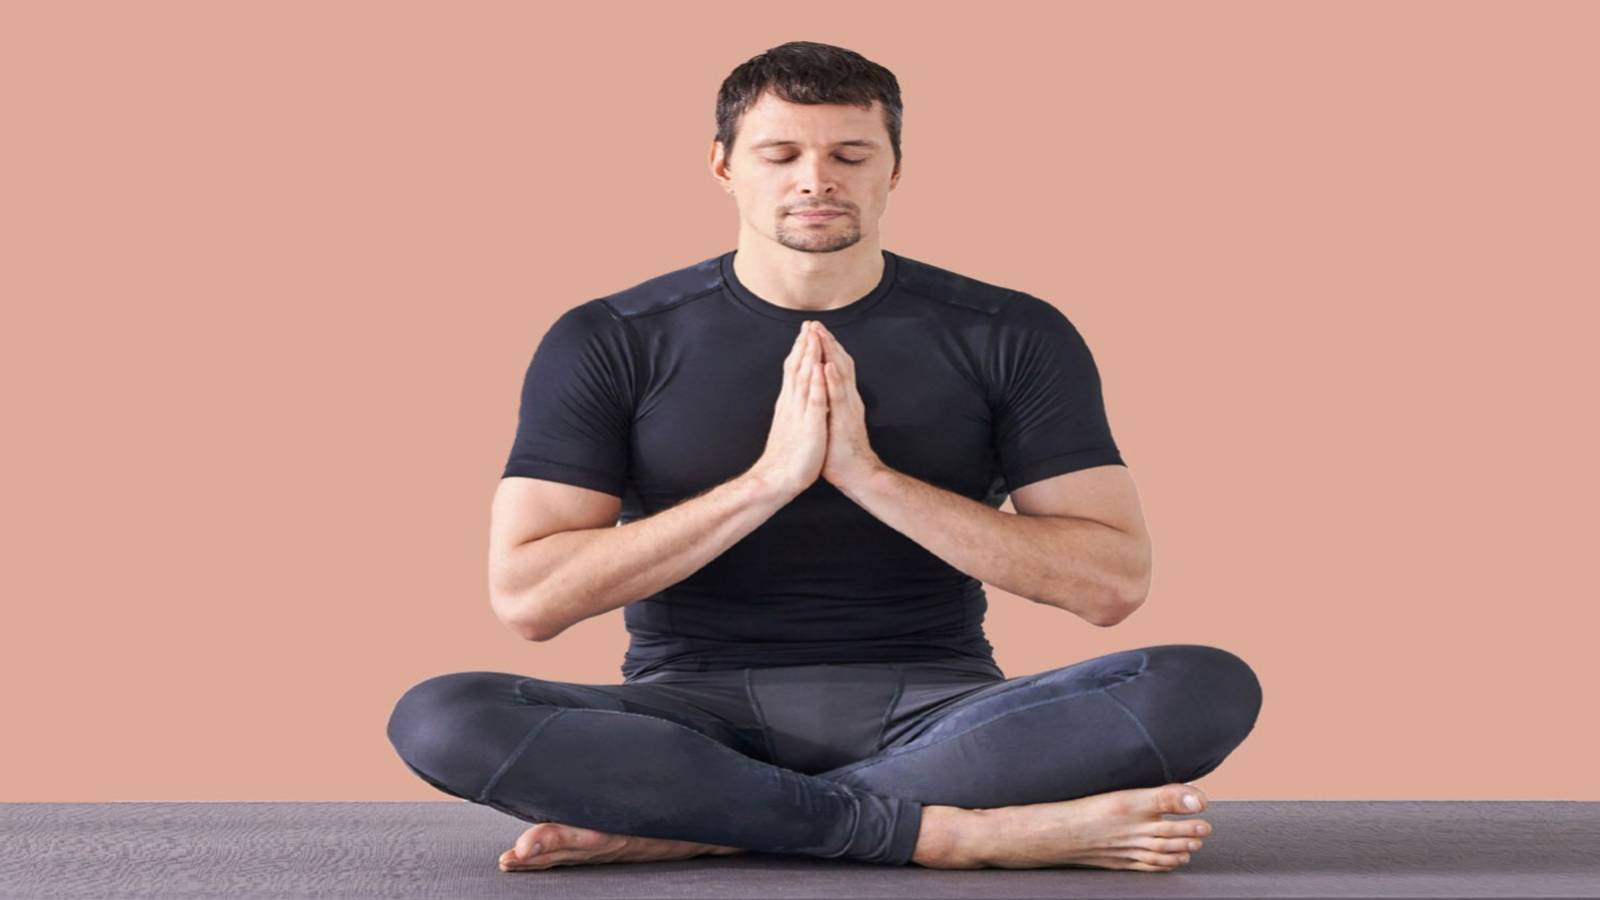 كيفية ممارسة اليوغا للحصول على شعور بالاسترخاء والهدوء؟ - تأثير ممارسة اليوغا على الصحة النفسية